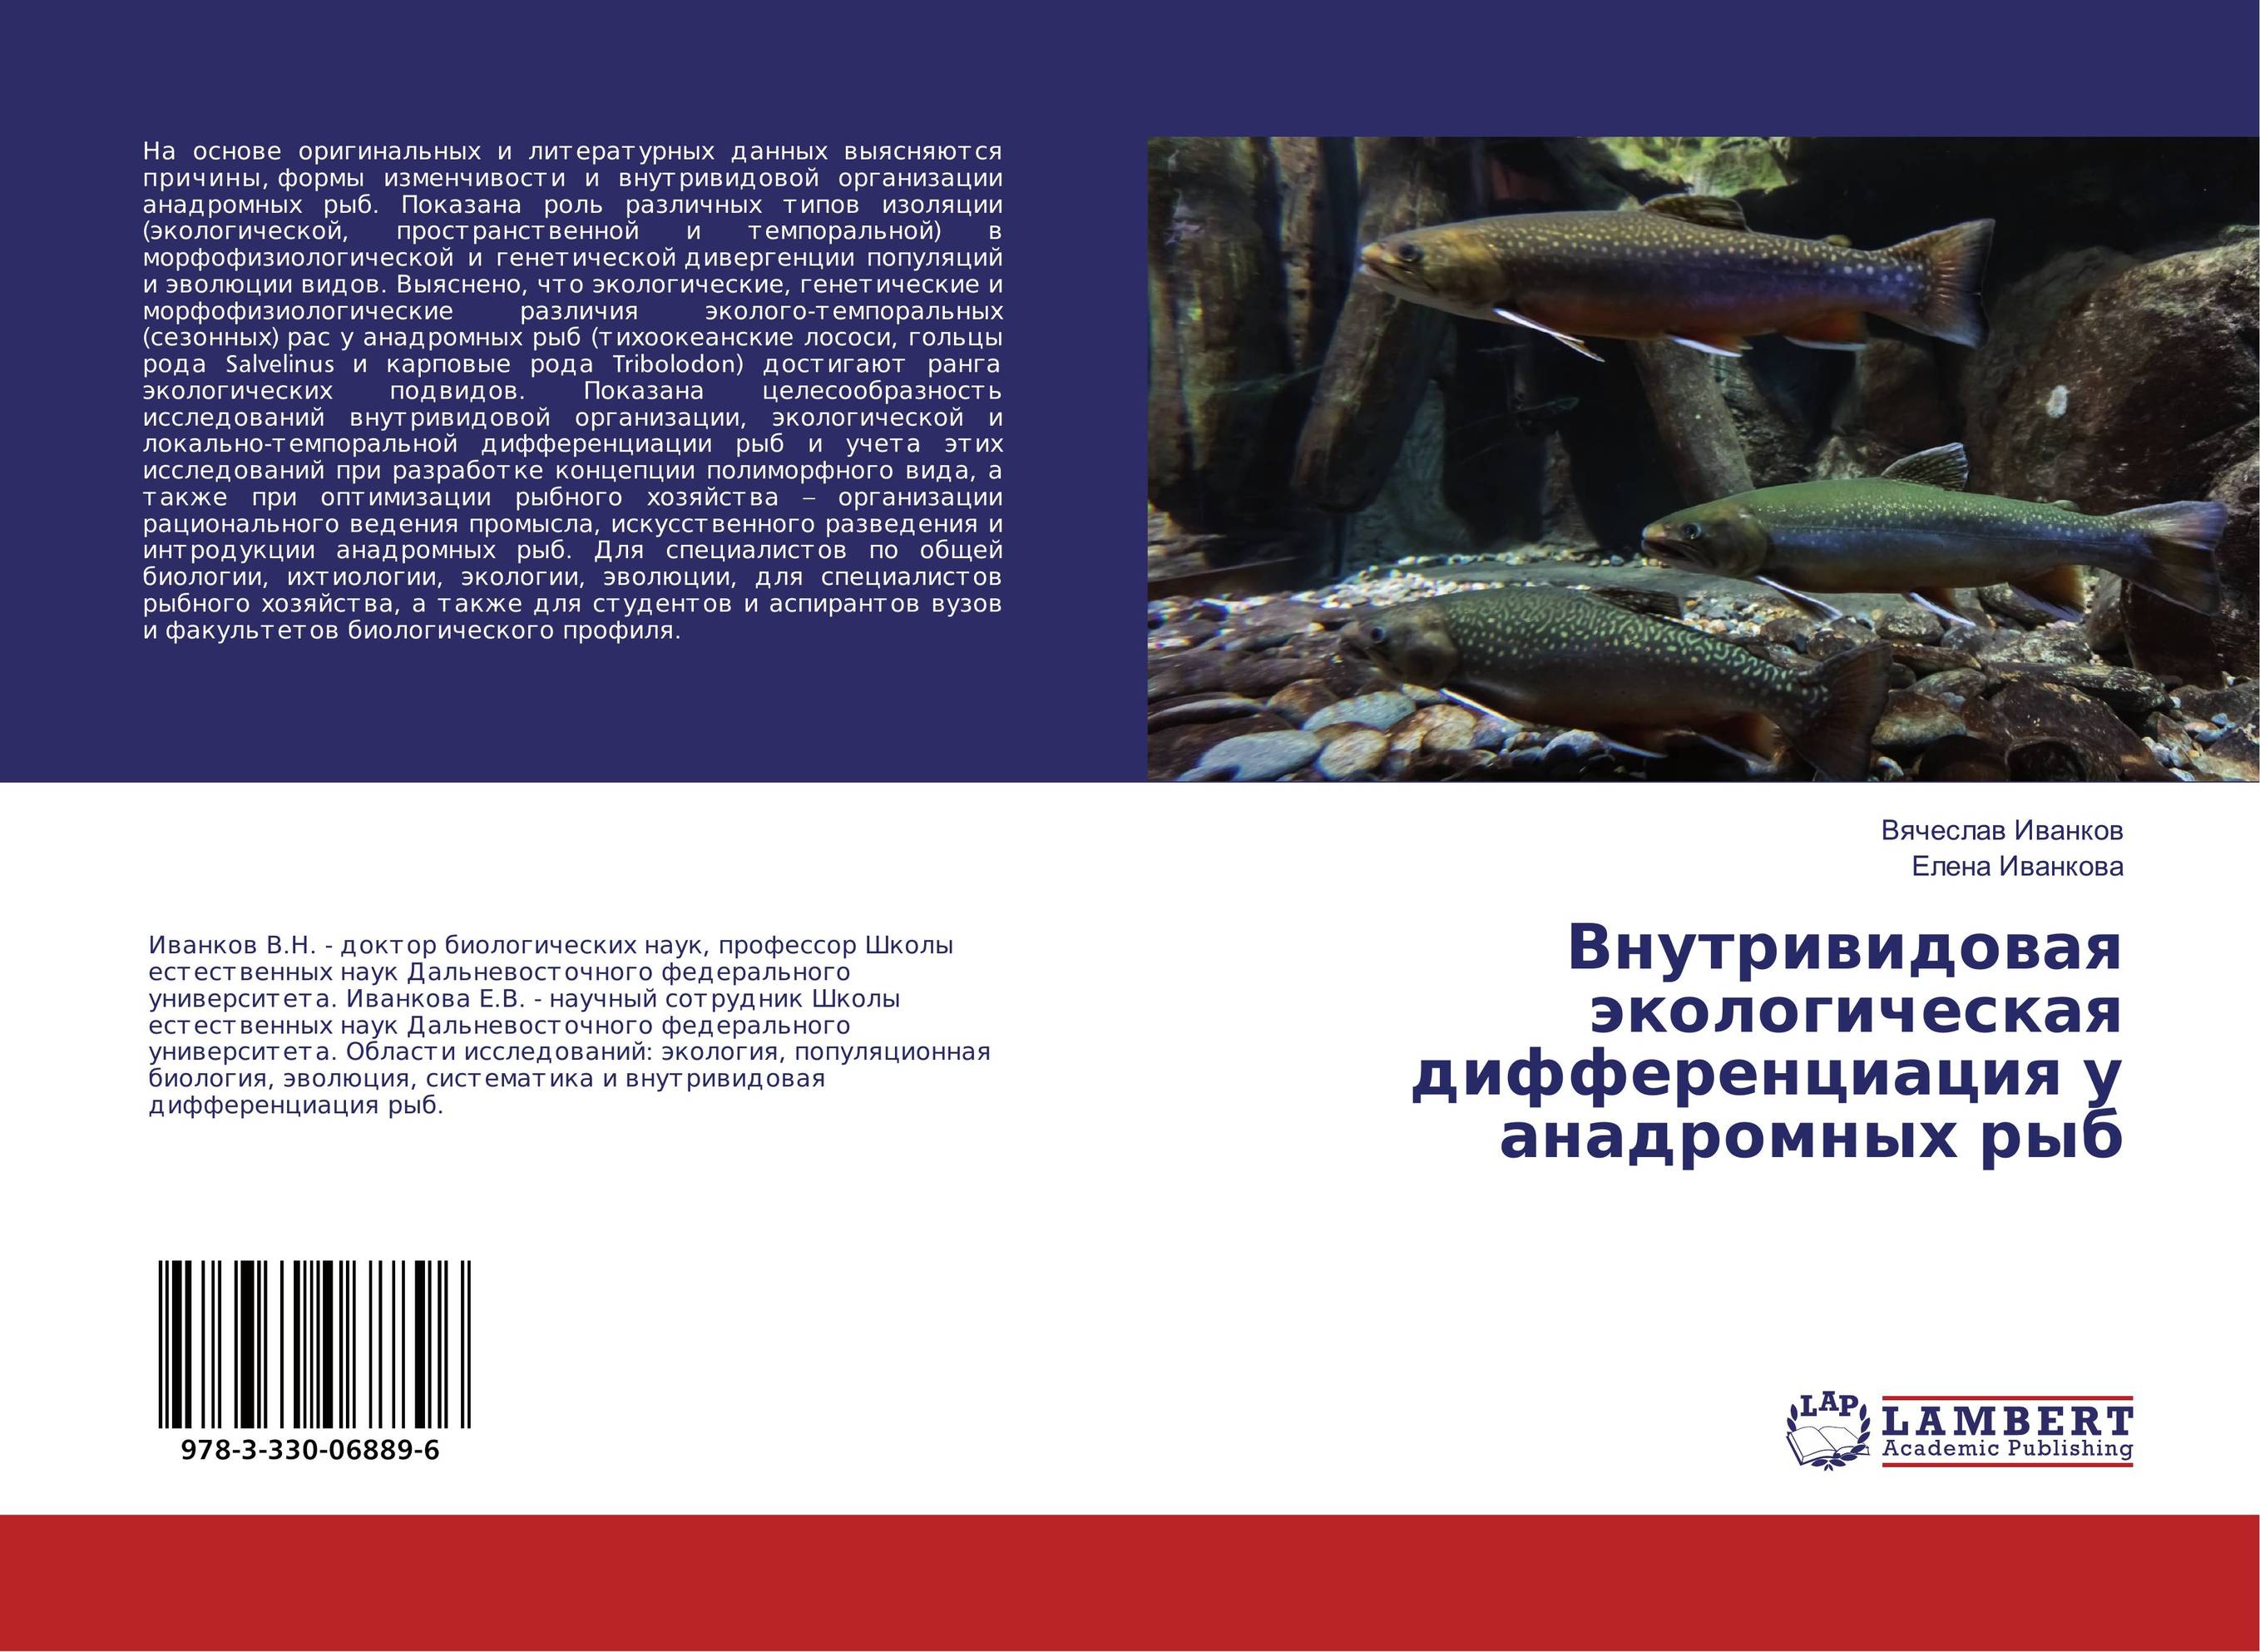 
        Внутривидовая экологическая дифференциация у анадромных рыб..
      